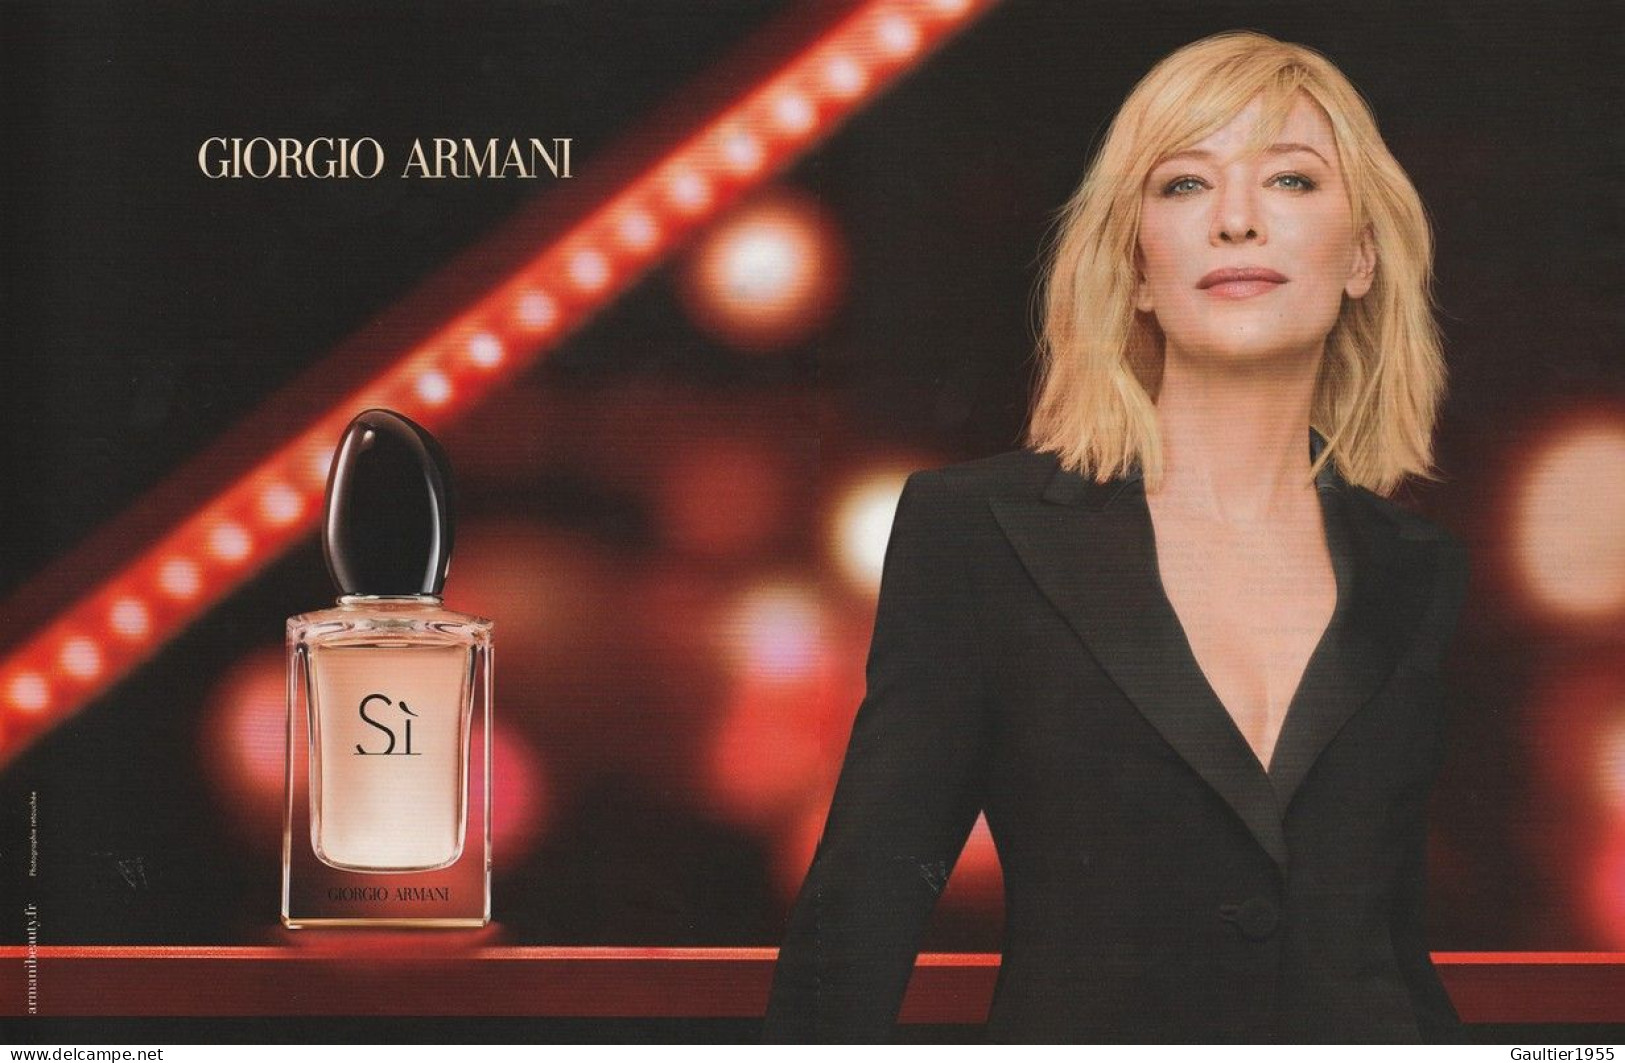 Publicité Papier - Advertising Paper - Armani 2 Pages - Publicités Parfum (journaux)